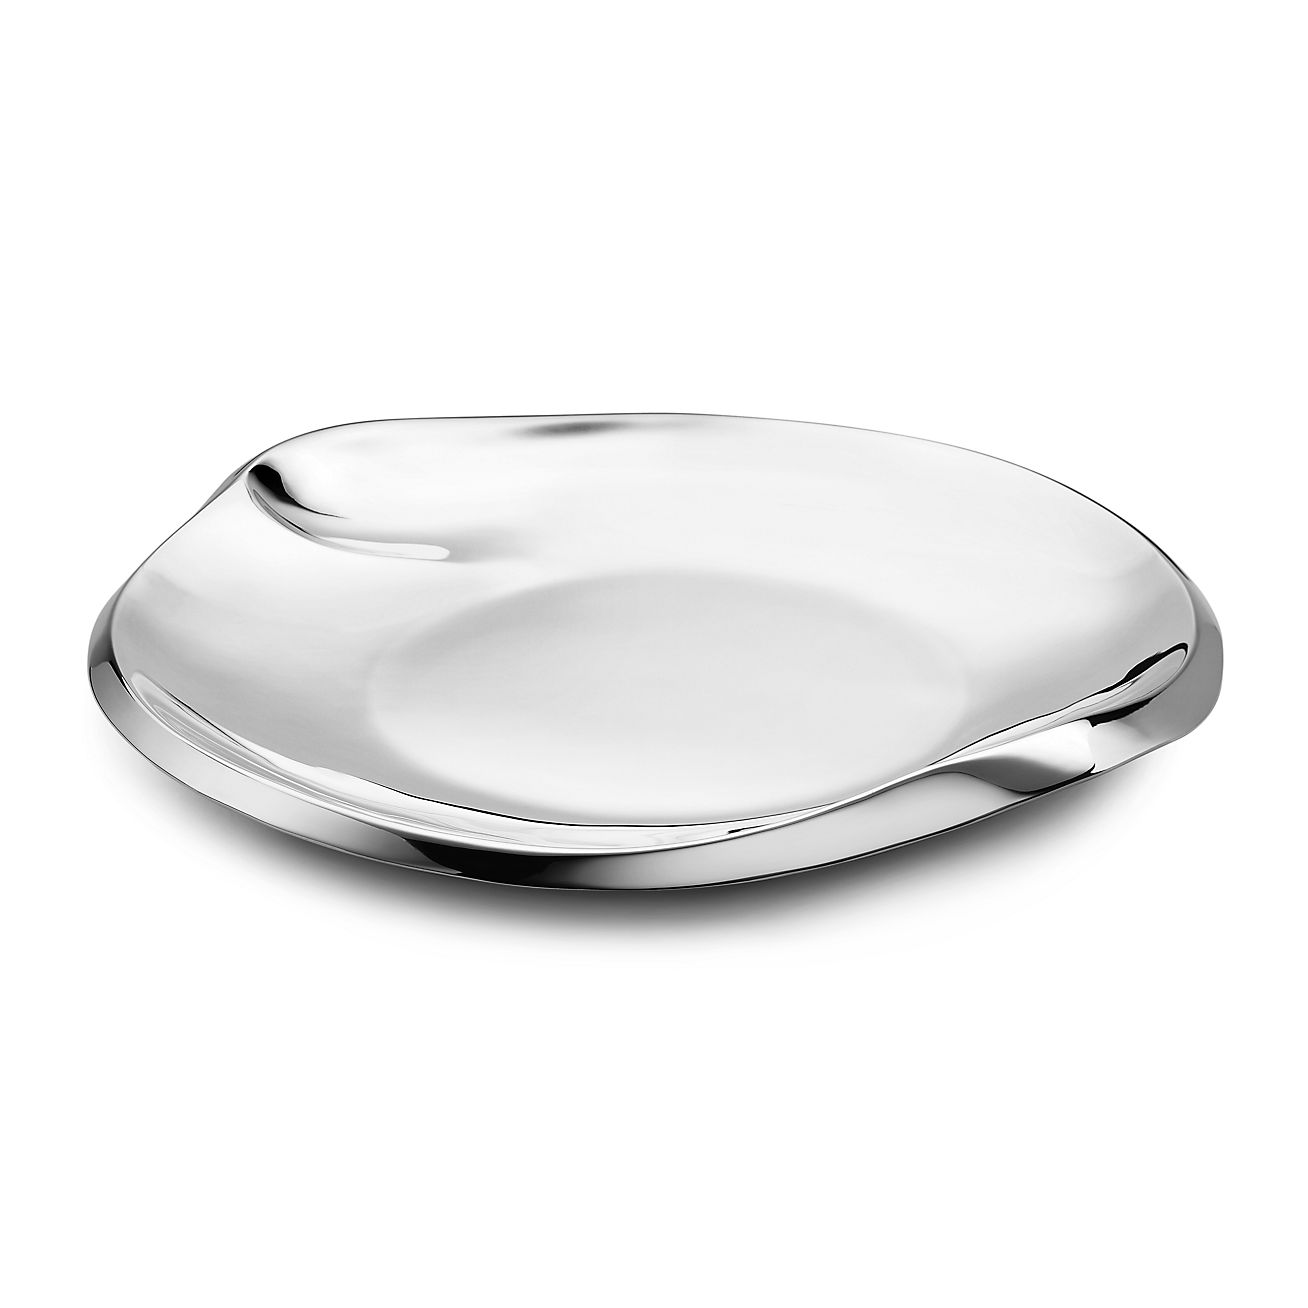 Elsa Peretti® Padova™ 32-piece flatware set in sterling silver.